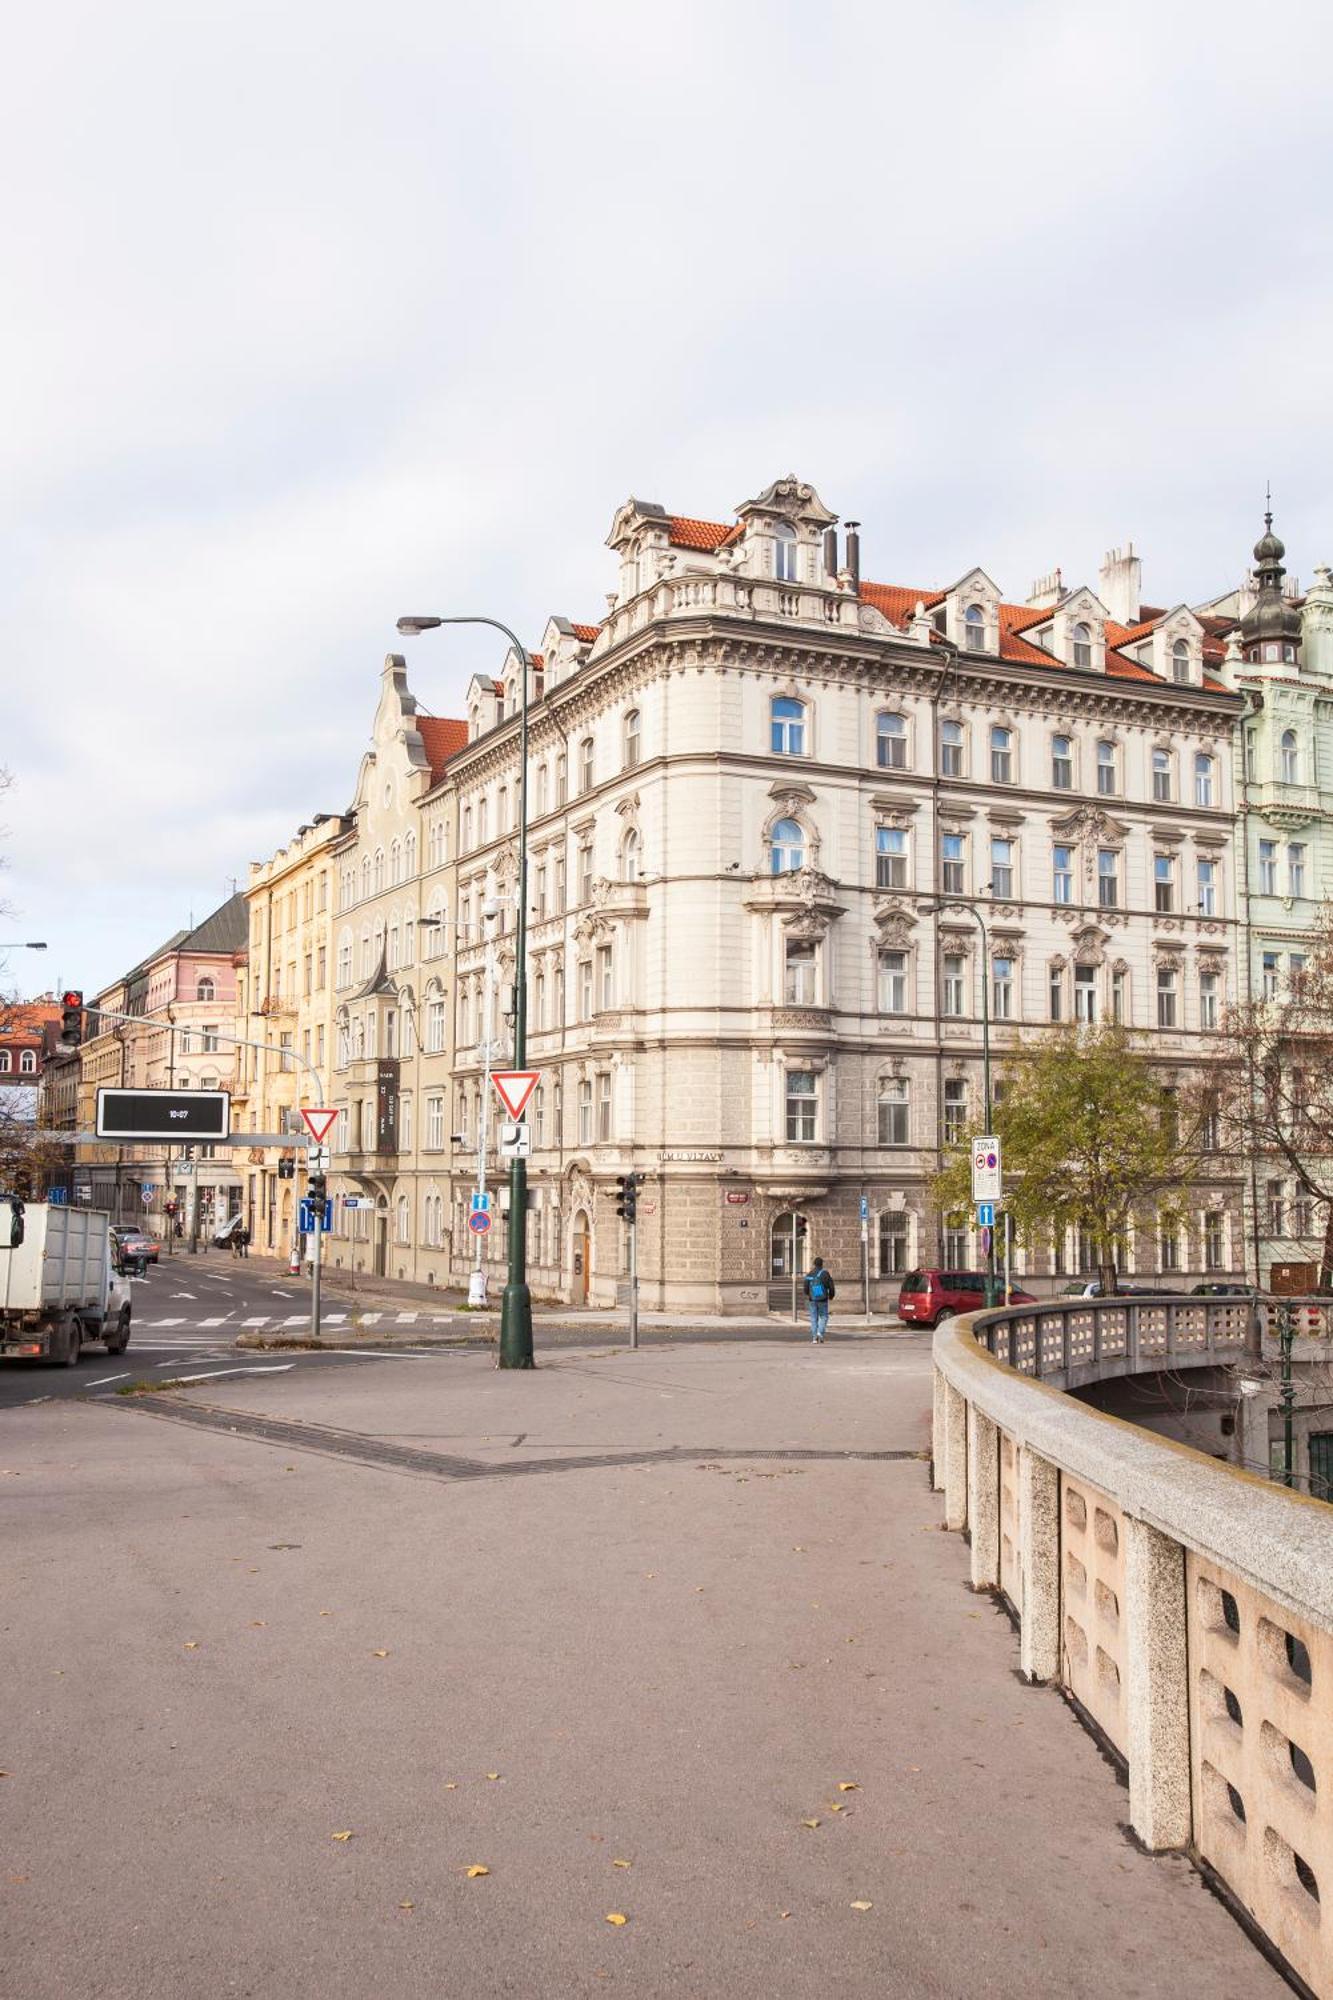 Vltava Apartments Prague Luaran gambar